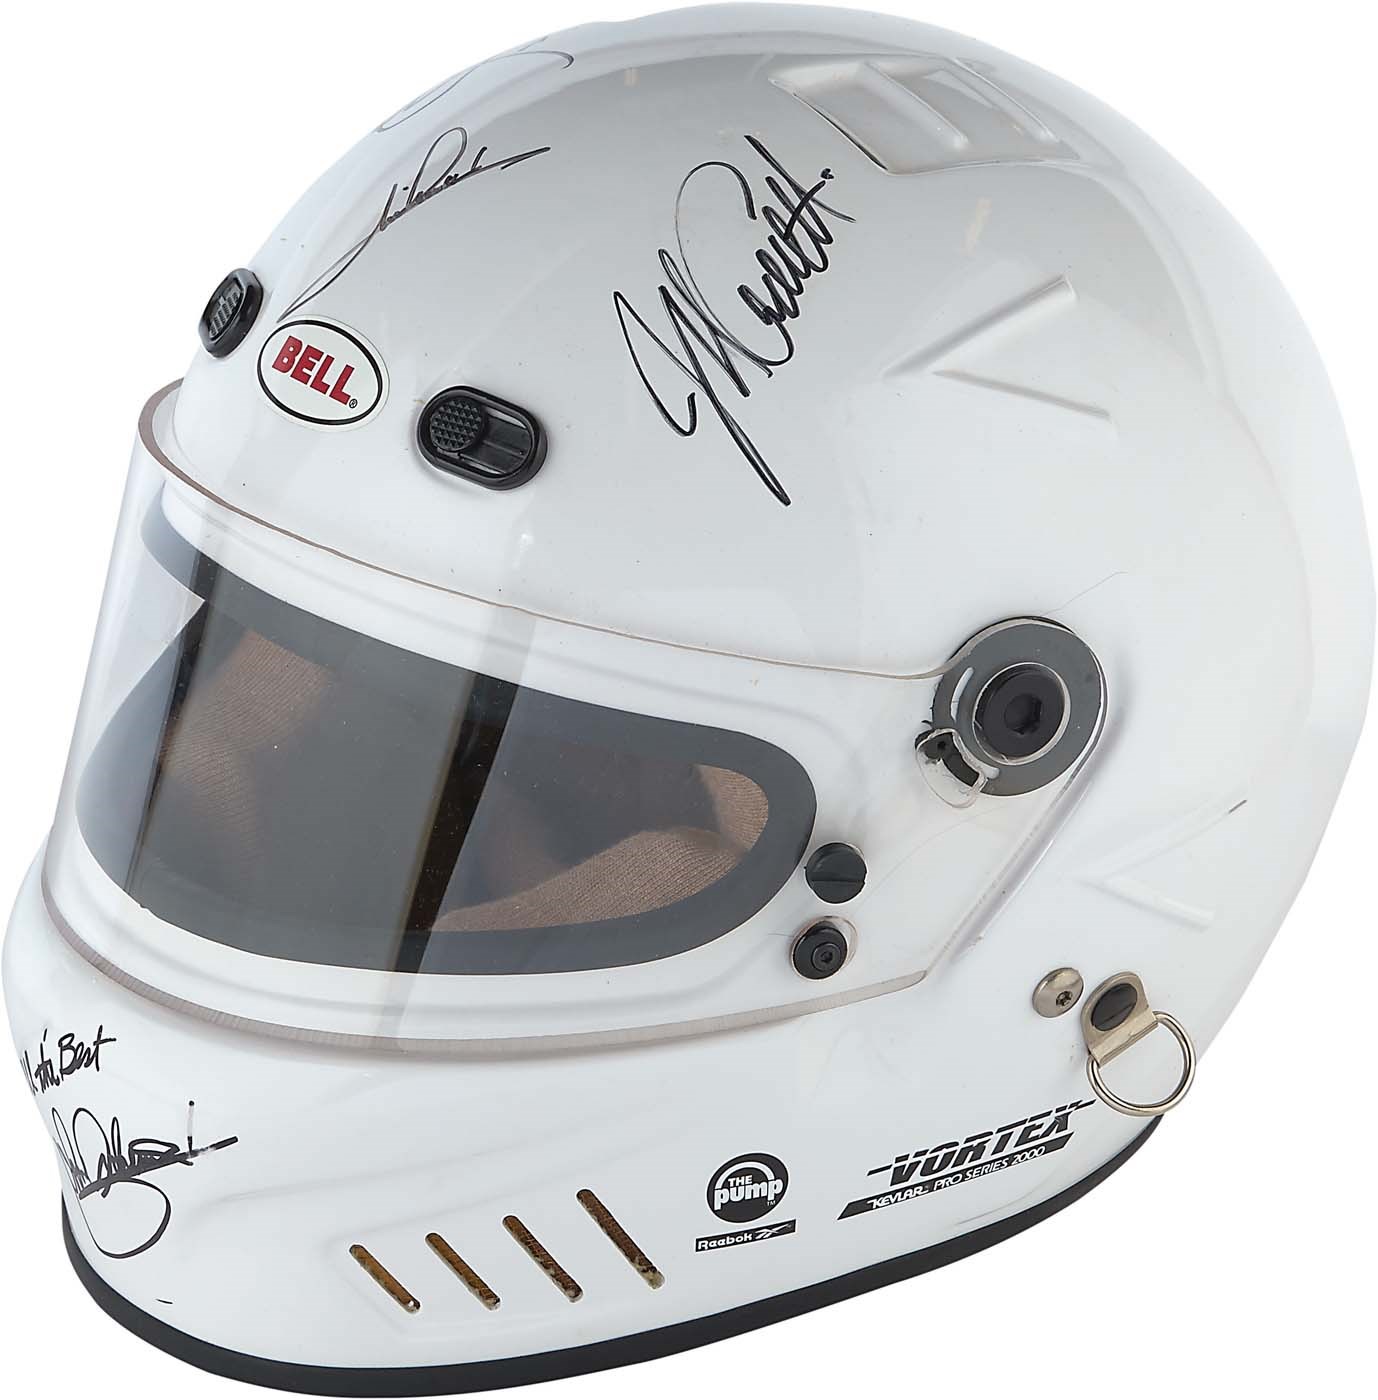 Andretti Family Signed Helmet